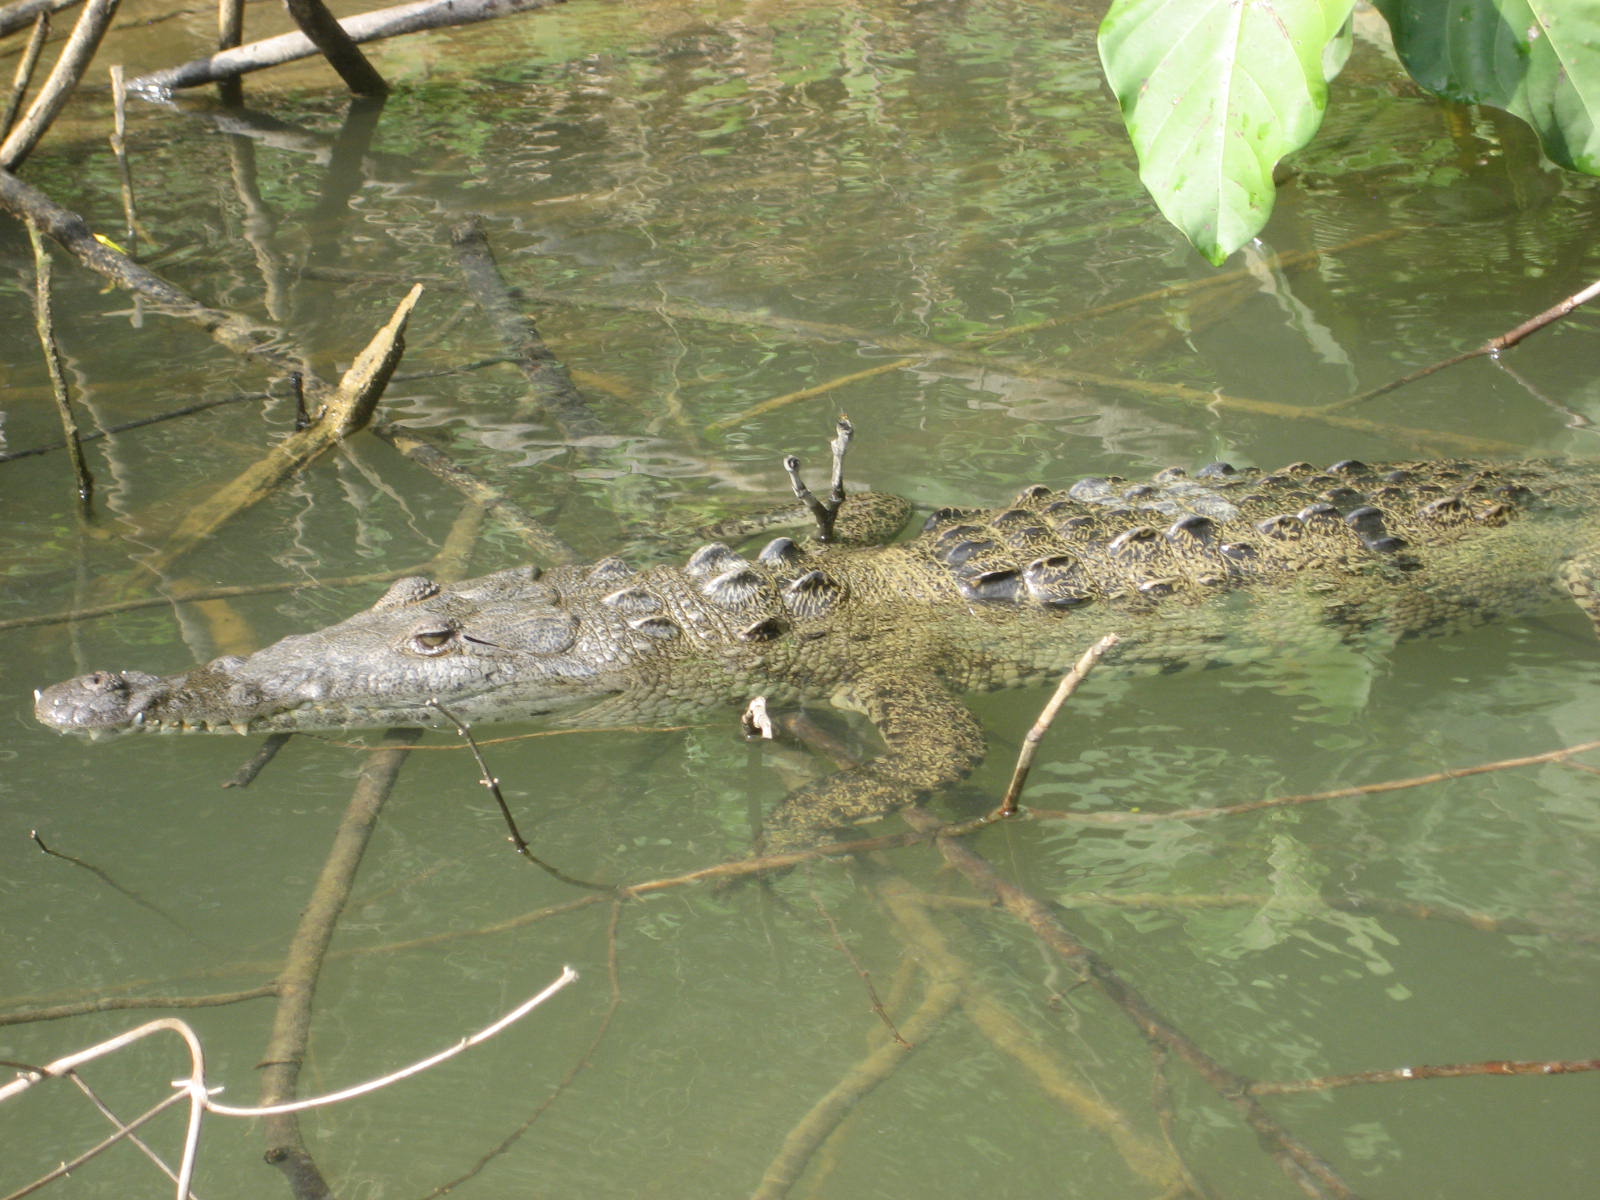 small, suspicious crocodile.